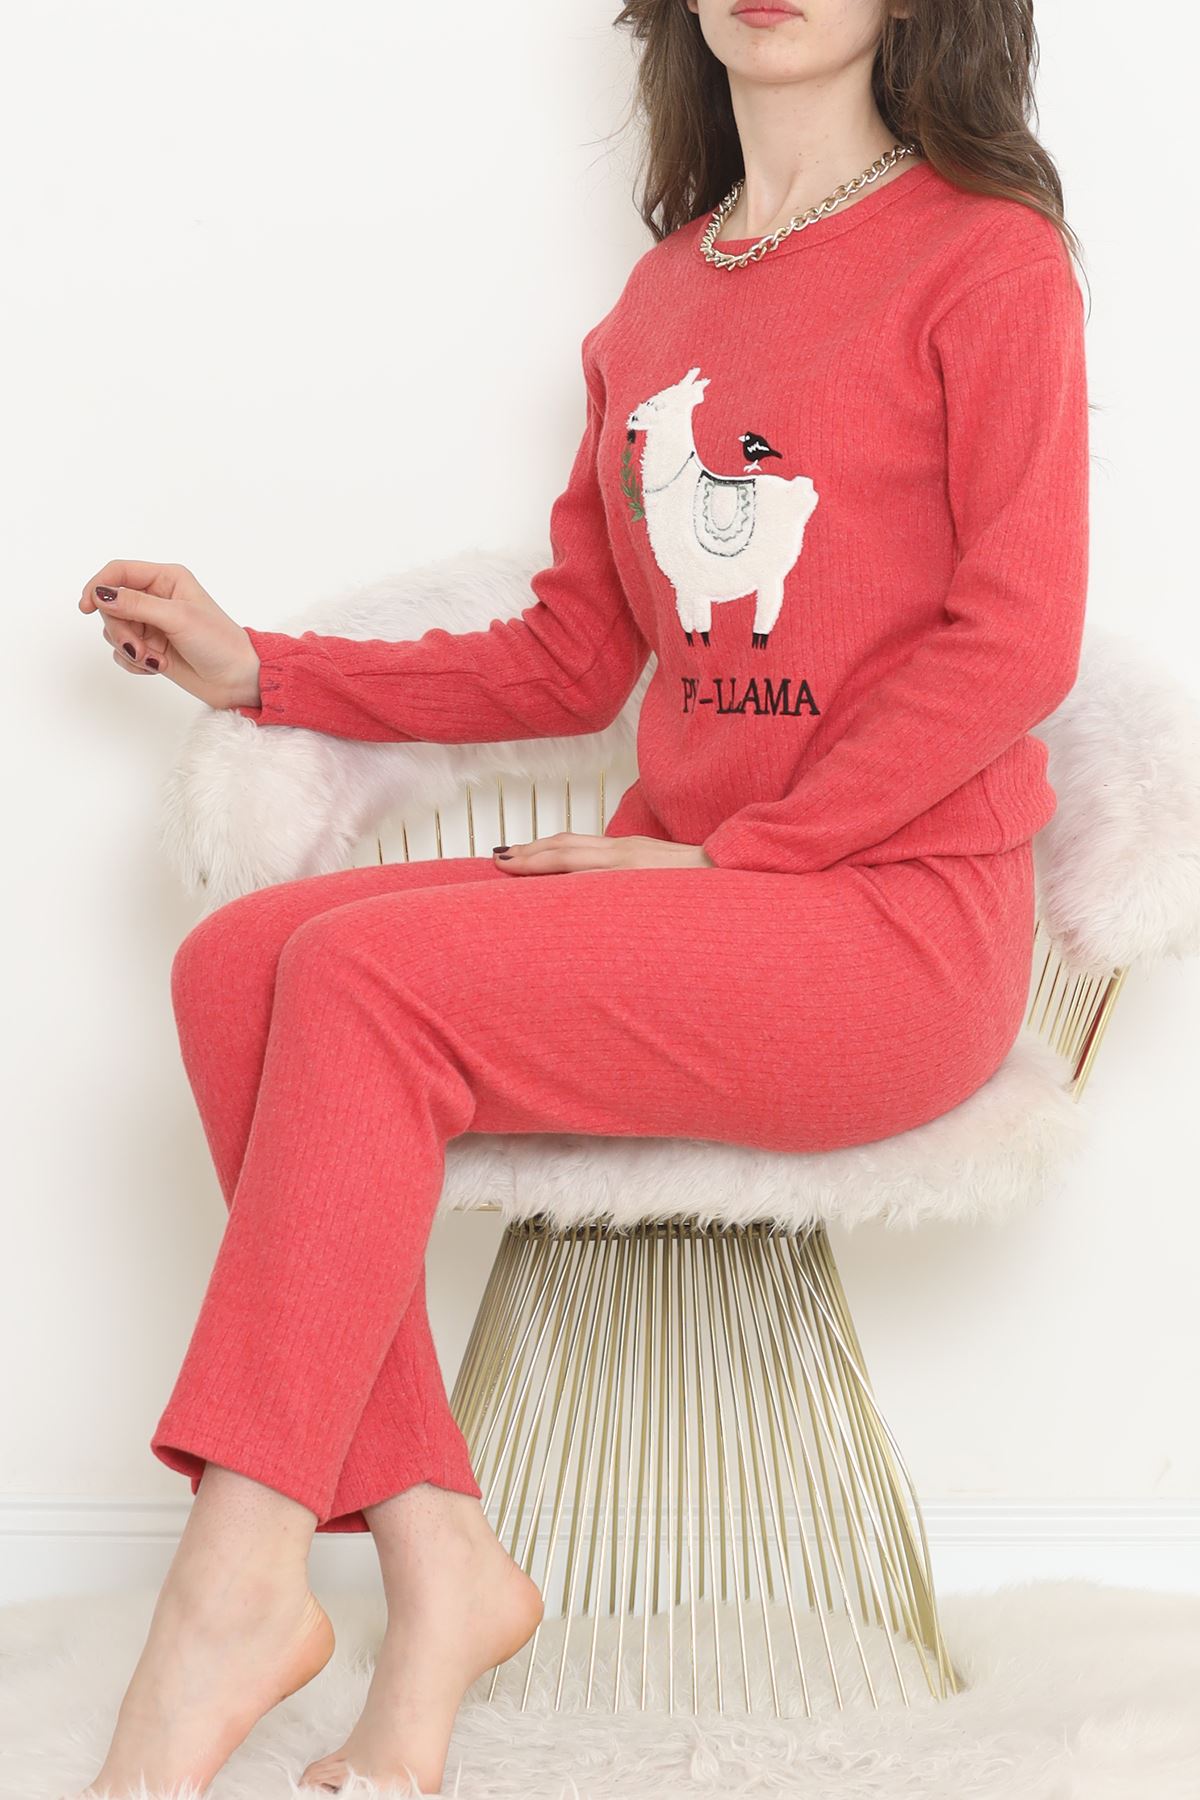 Nakışlı Fitilli Pijama Takımı Kırmızıbeyaz - 12519.1048.